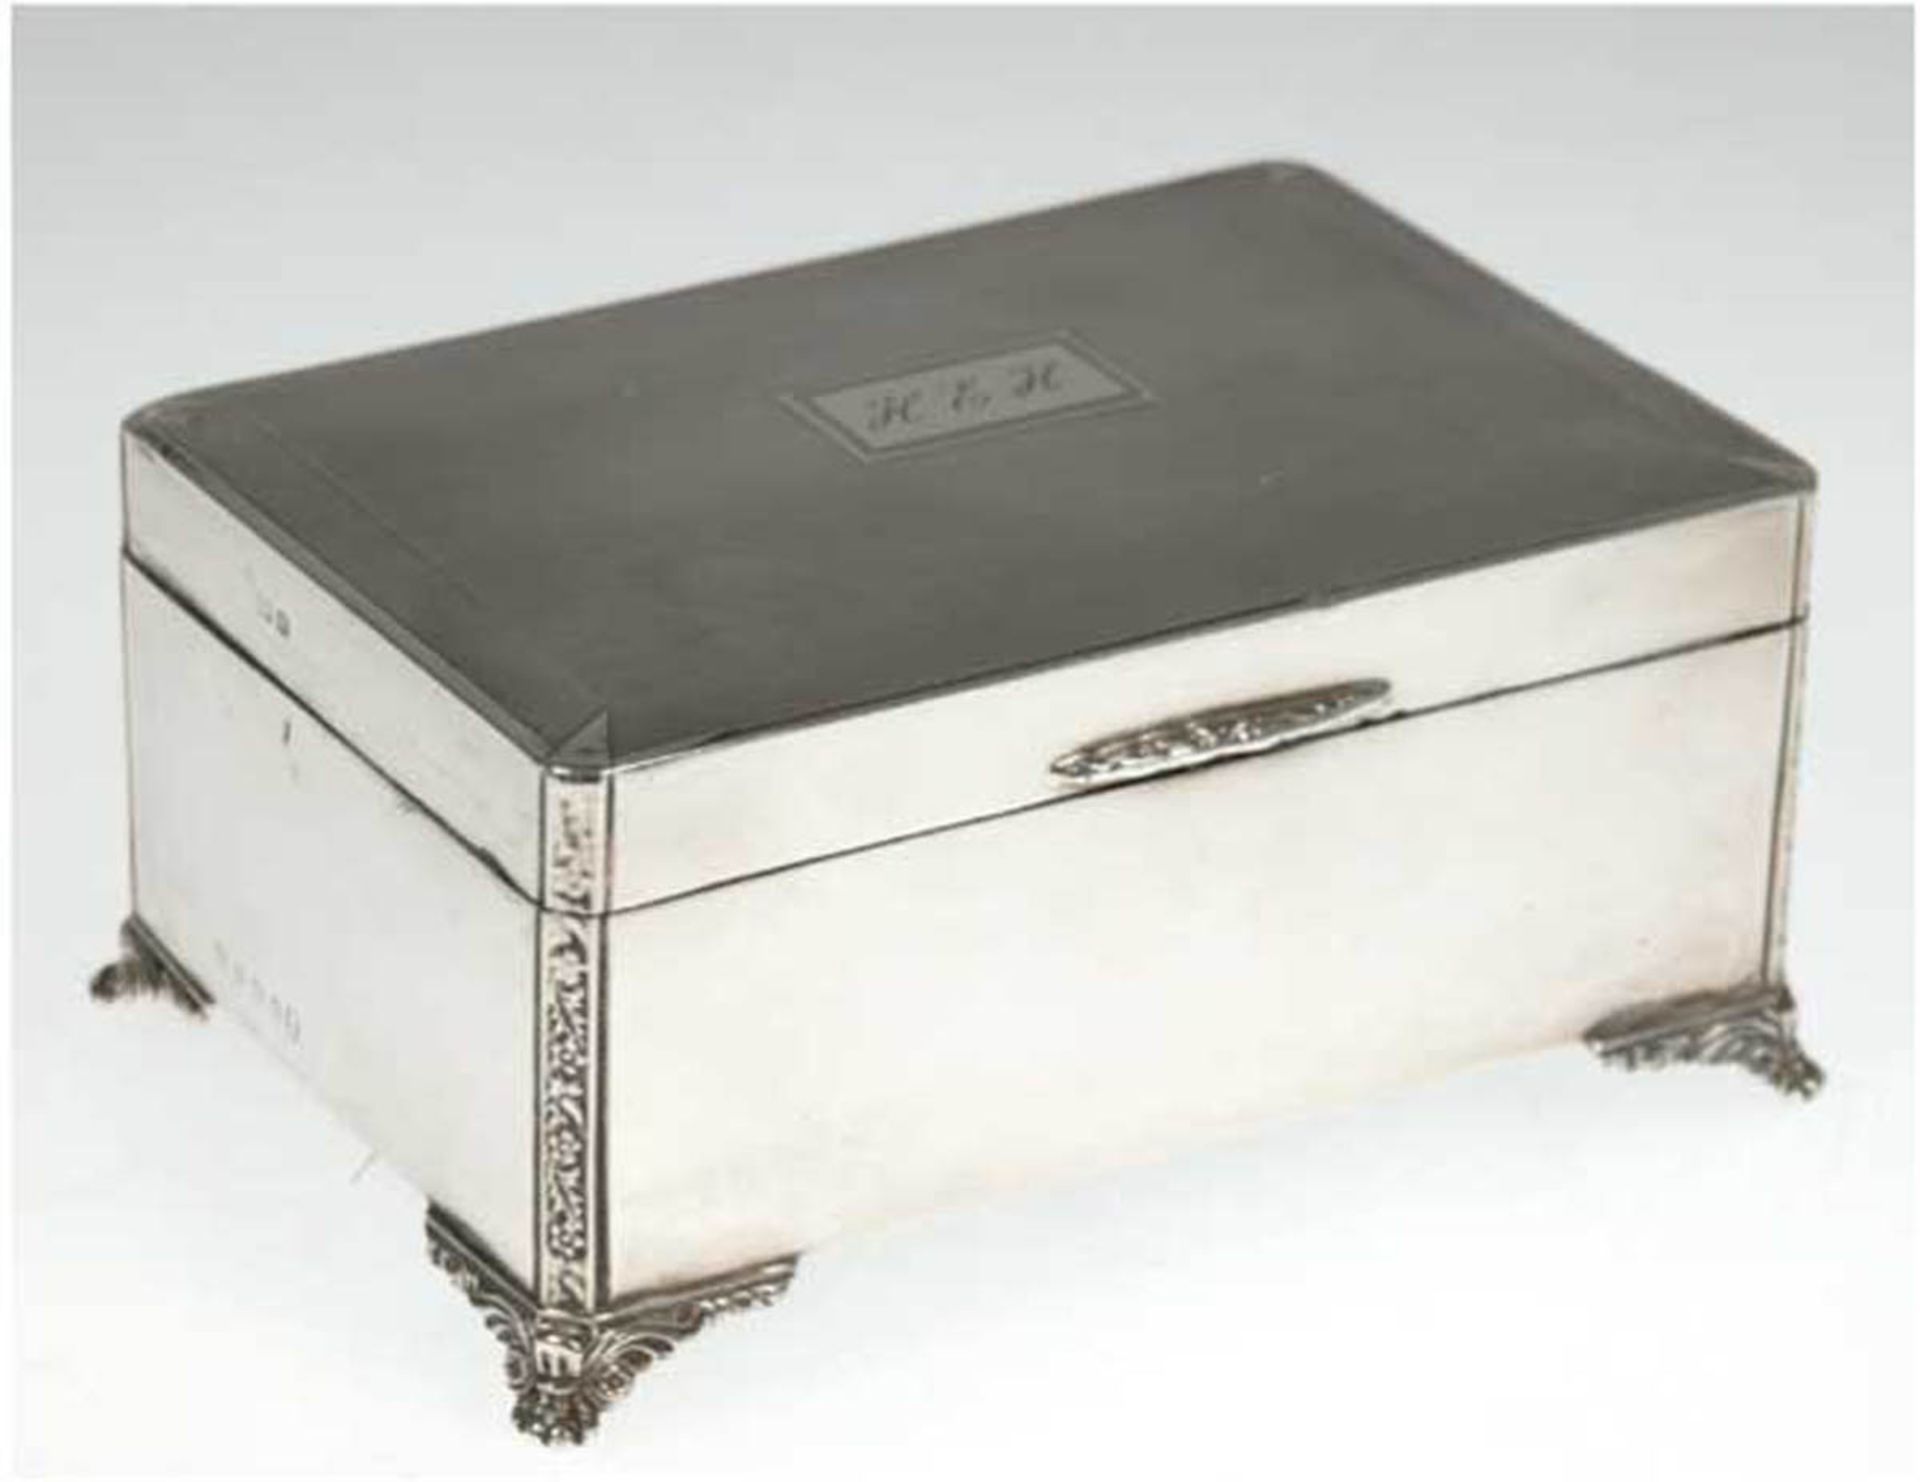 Deckelkasten auf Klauenfüßen, 925er Silber, Birmingham, Holzauskleidung, Deckel mit - Image 2 of 2